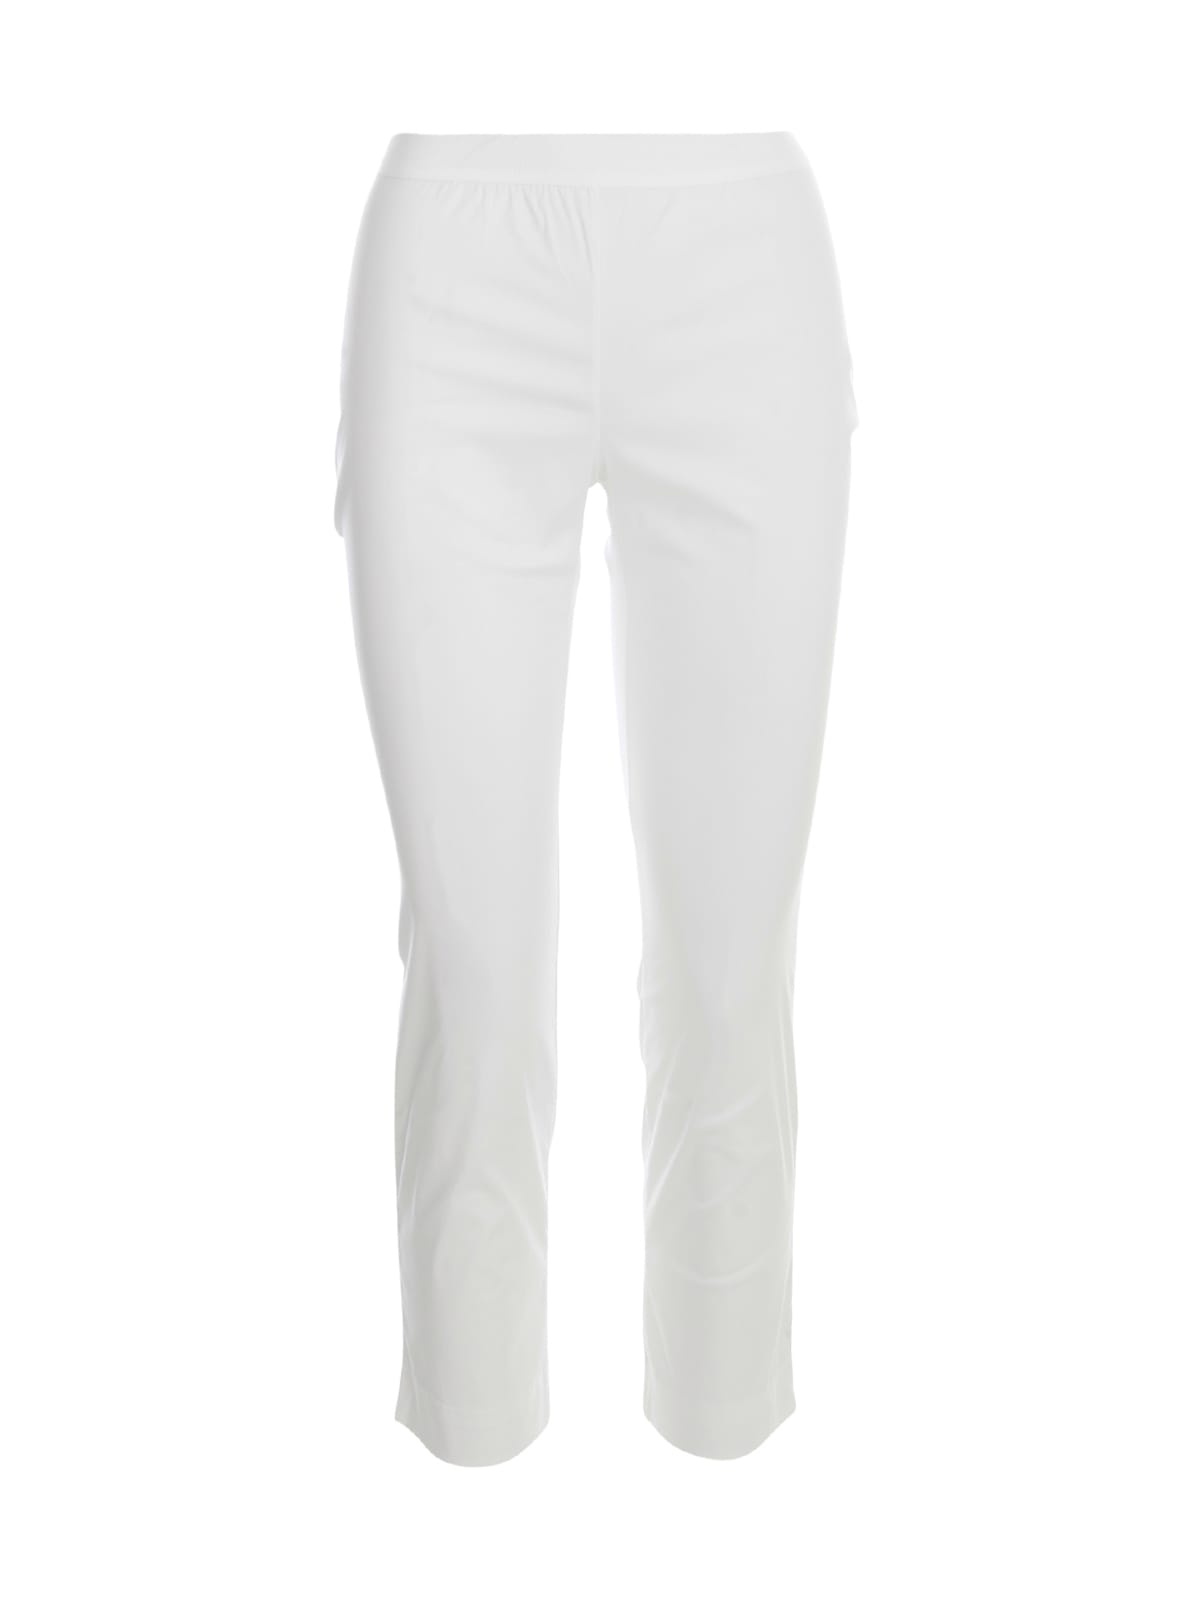 LIVIANA CONTI POPELINE LEGGINGS trousers,CNTK37088 A01 WHITE